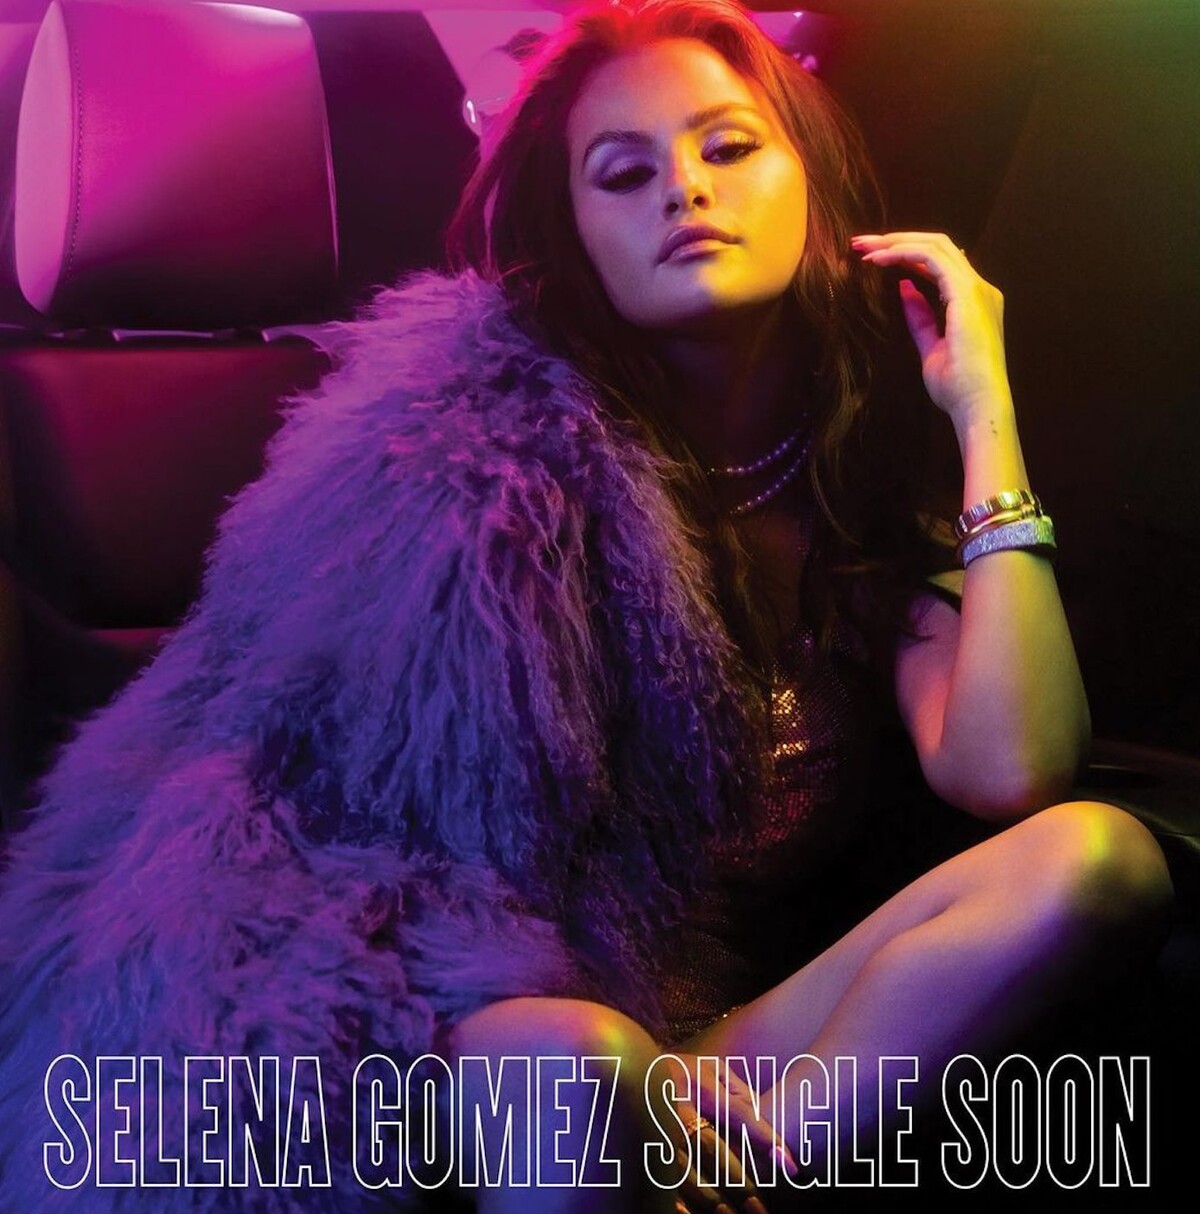 Selena je so single statusom v pohode. V najnovšom klipe k Single Soon si oblieka najlepšie šaty a užíva párty život.